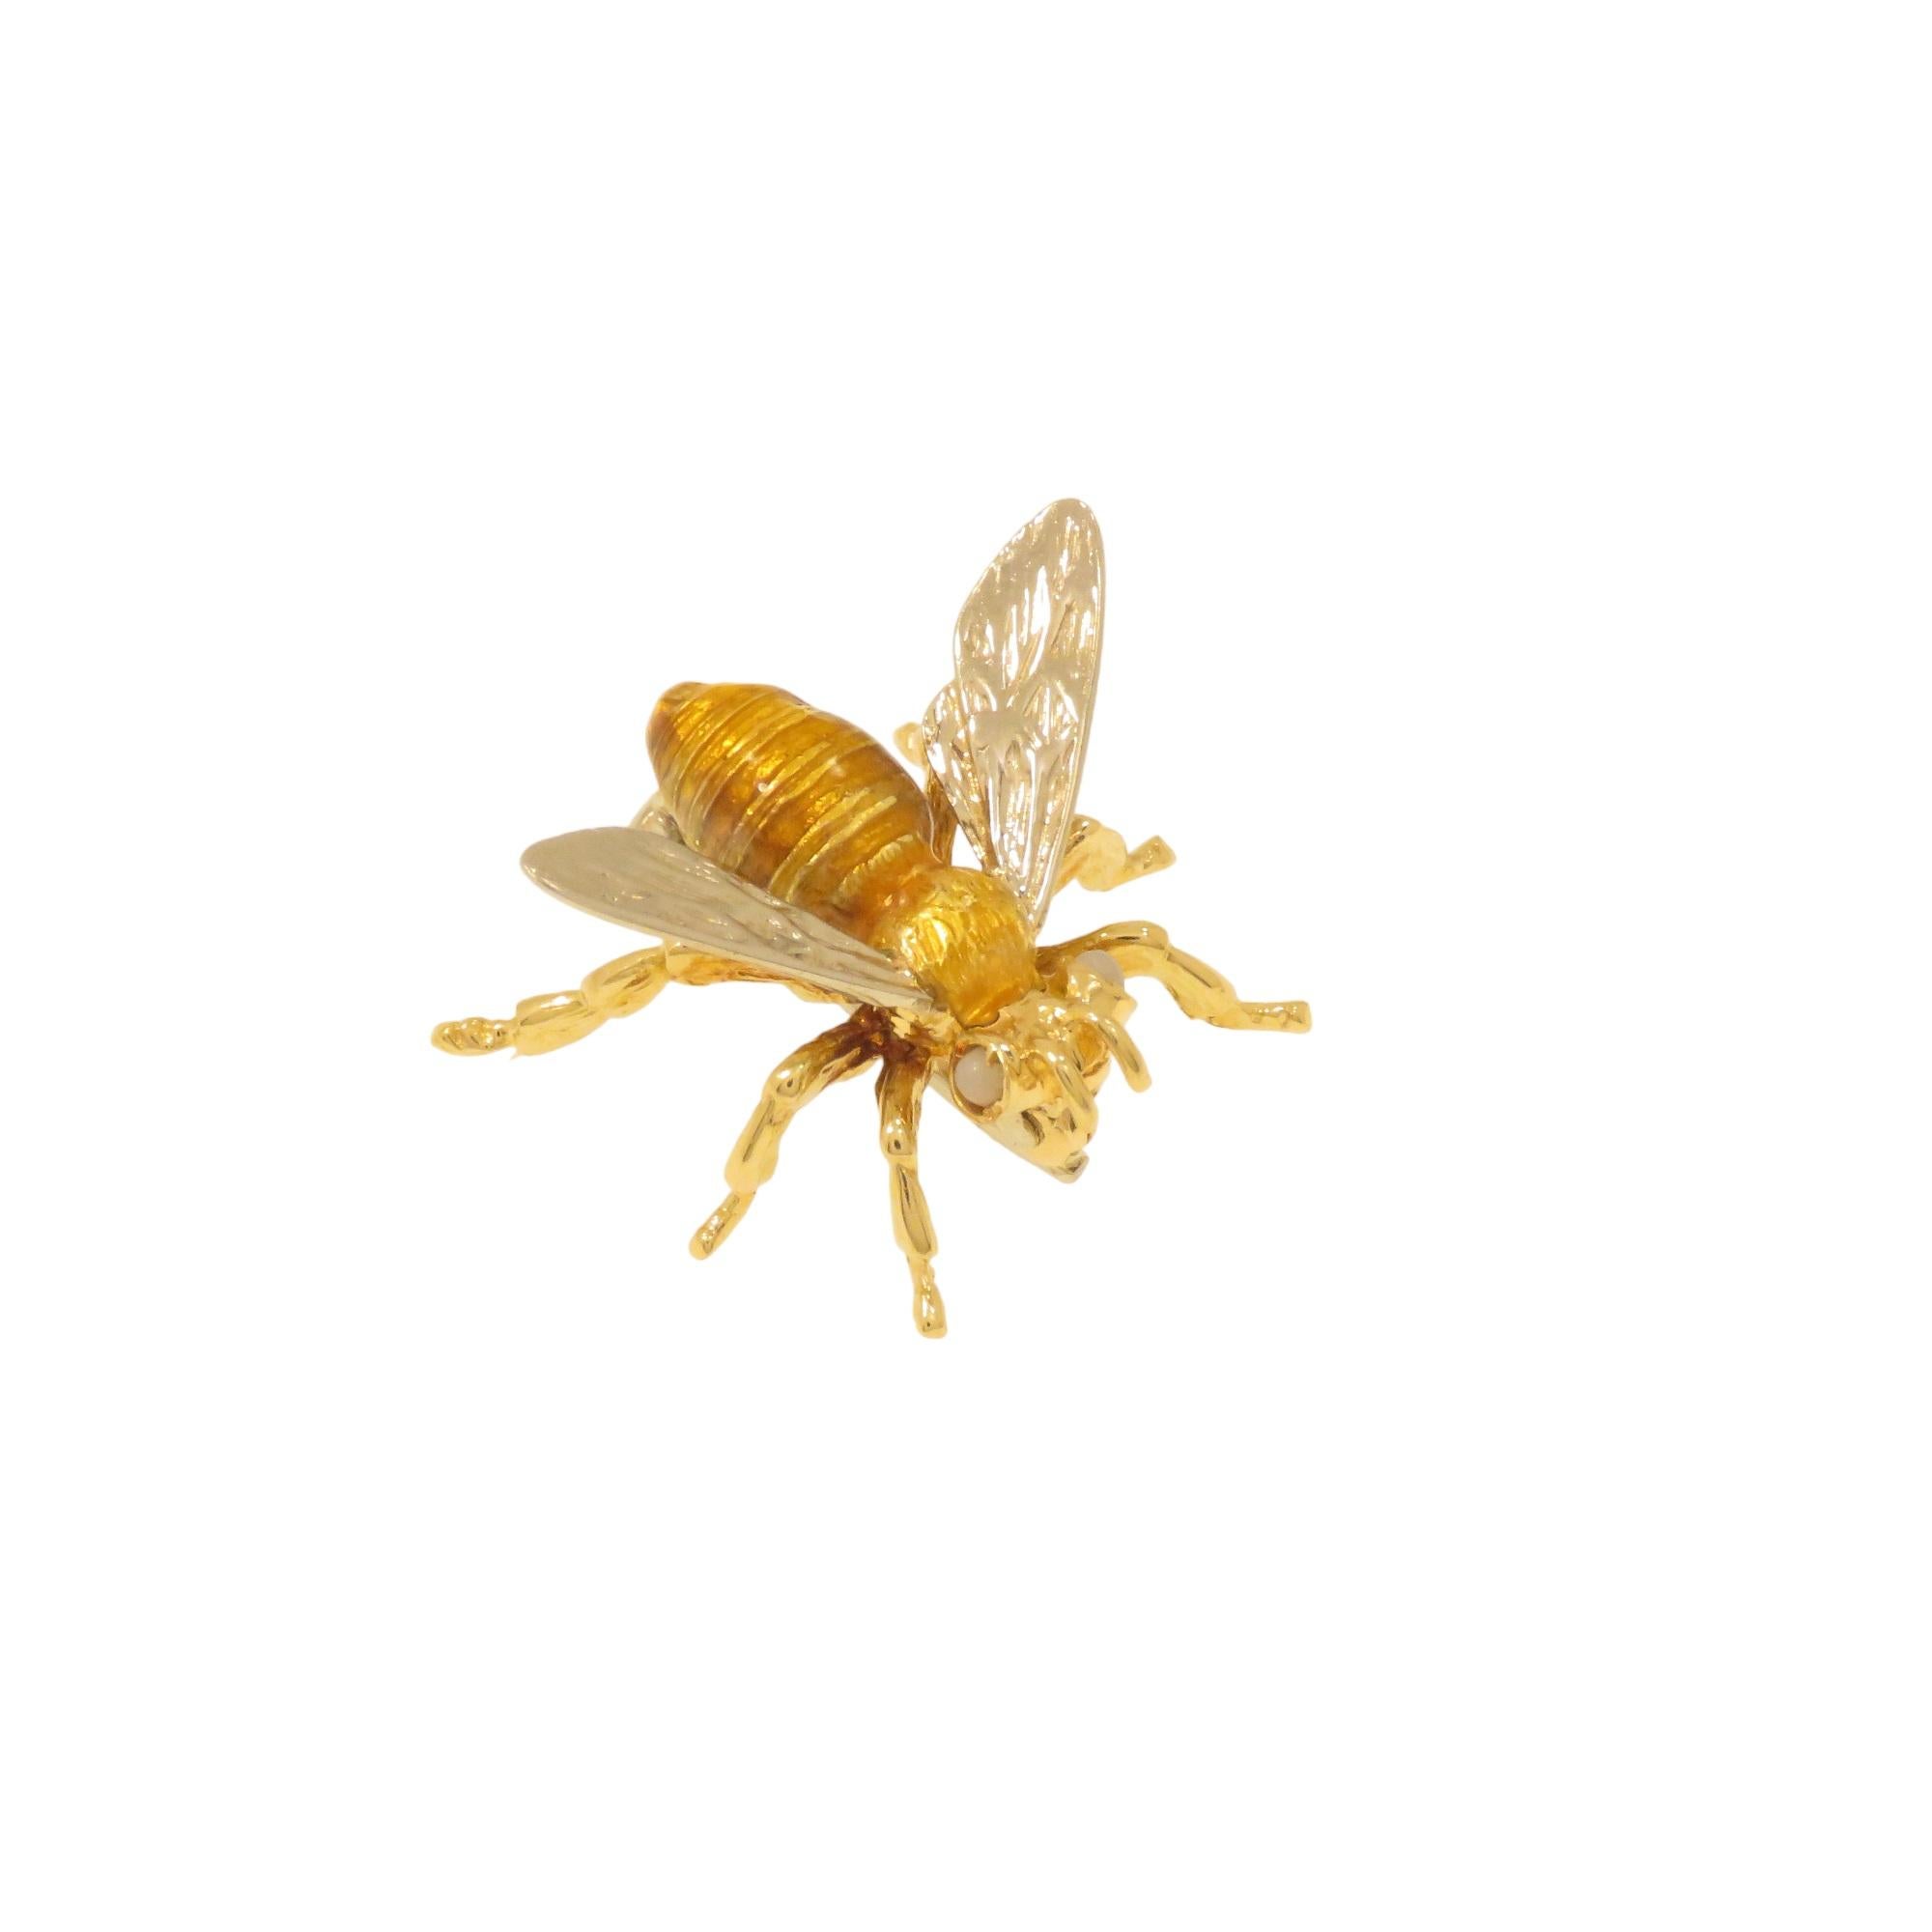 Cette broche représente une abeille et est fabriquée à la main avec une attention particulière aux détails miniatures. Produit en Italie entre 1960 et 1970. Le corps est en or jaune 18 carats avec émaillage au feu et les ailes sont en or blanc 18